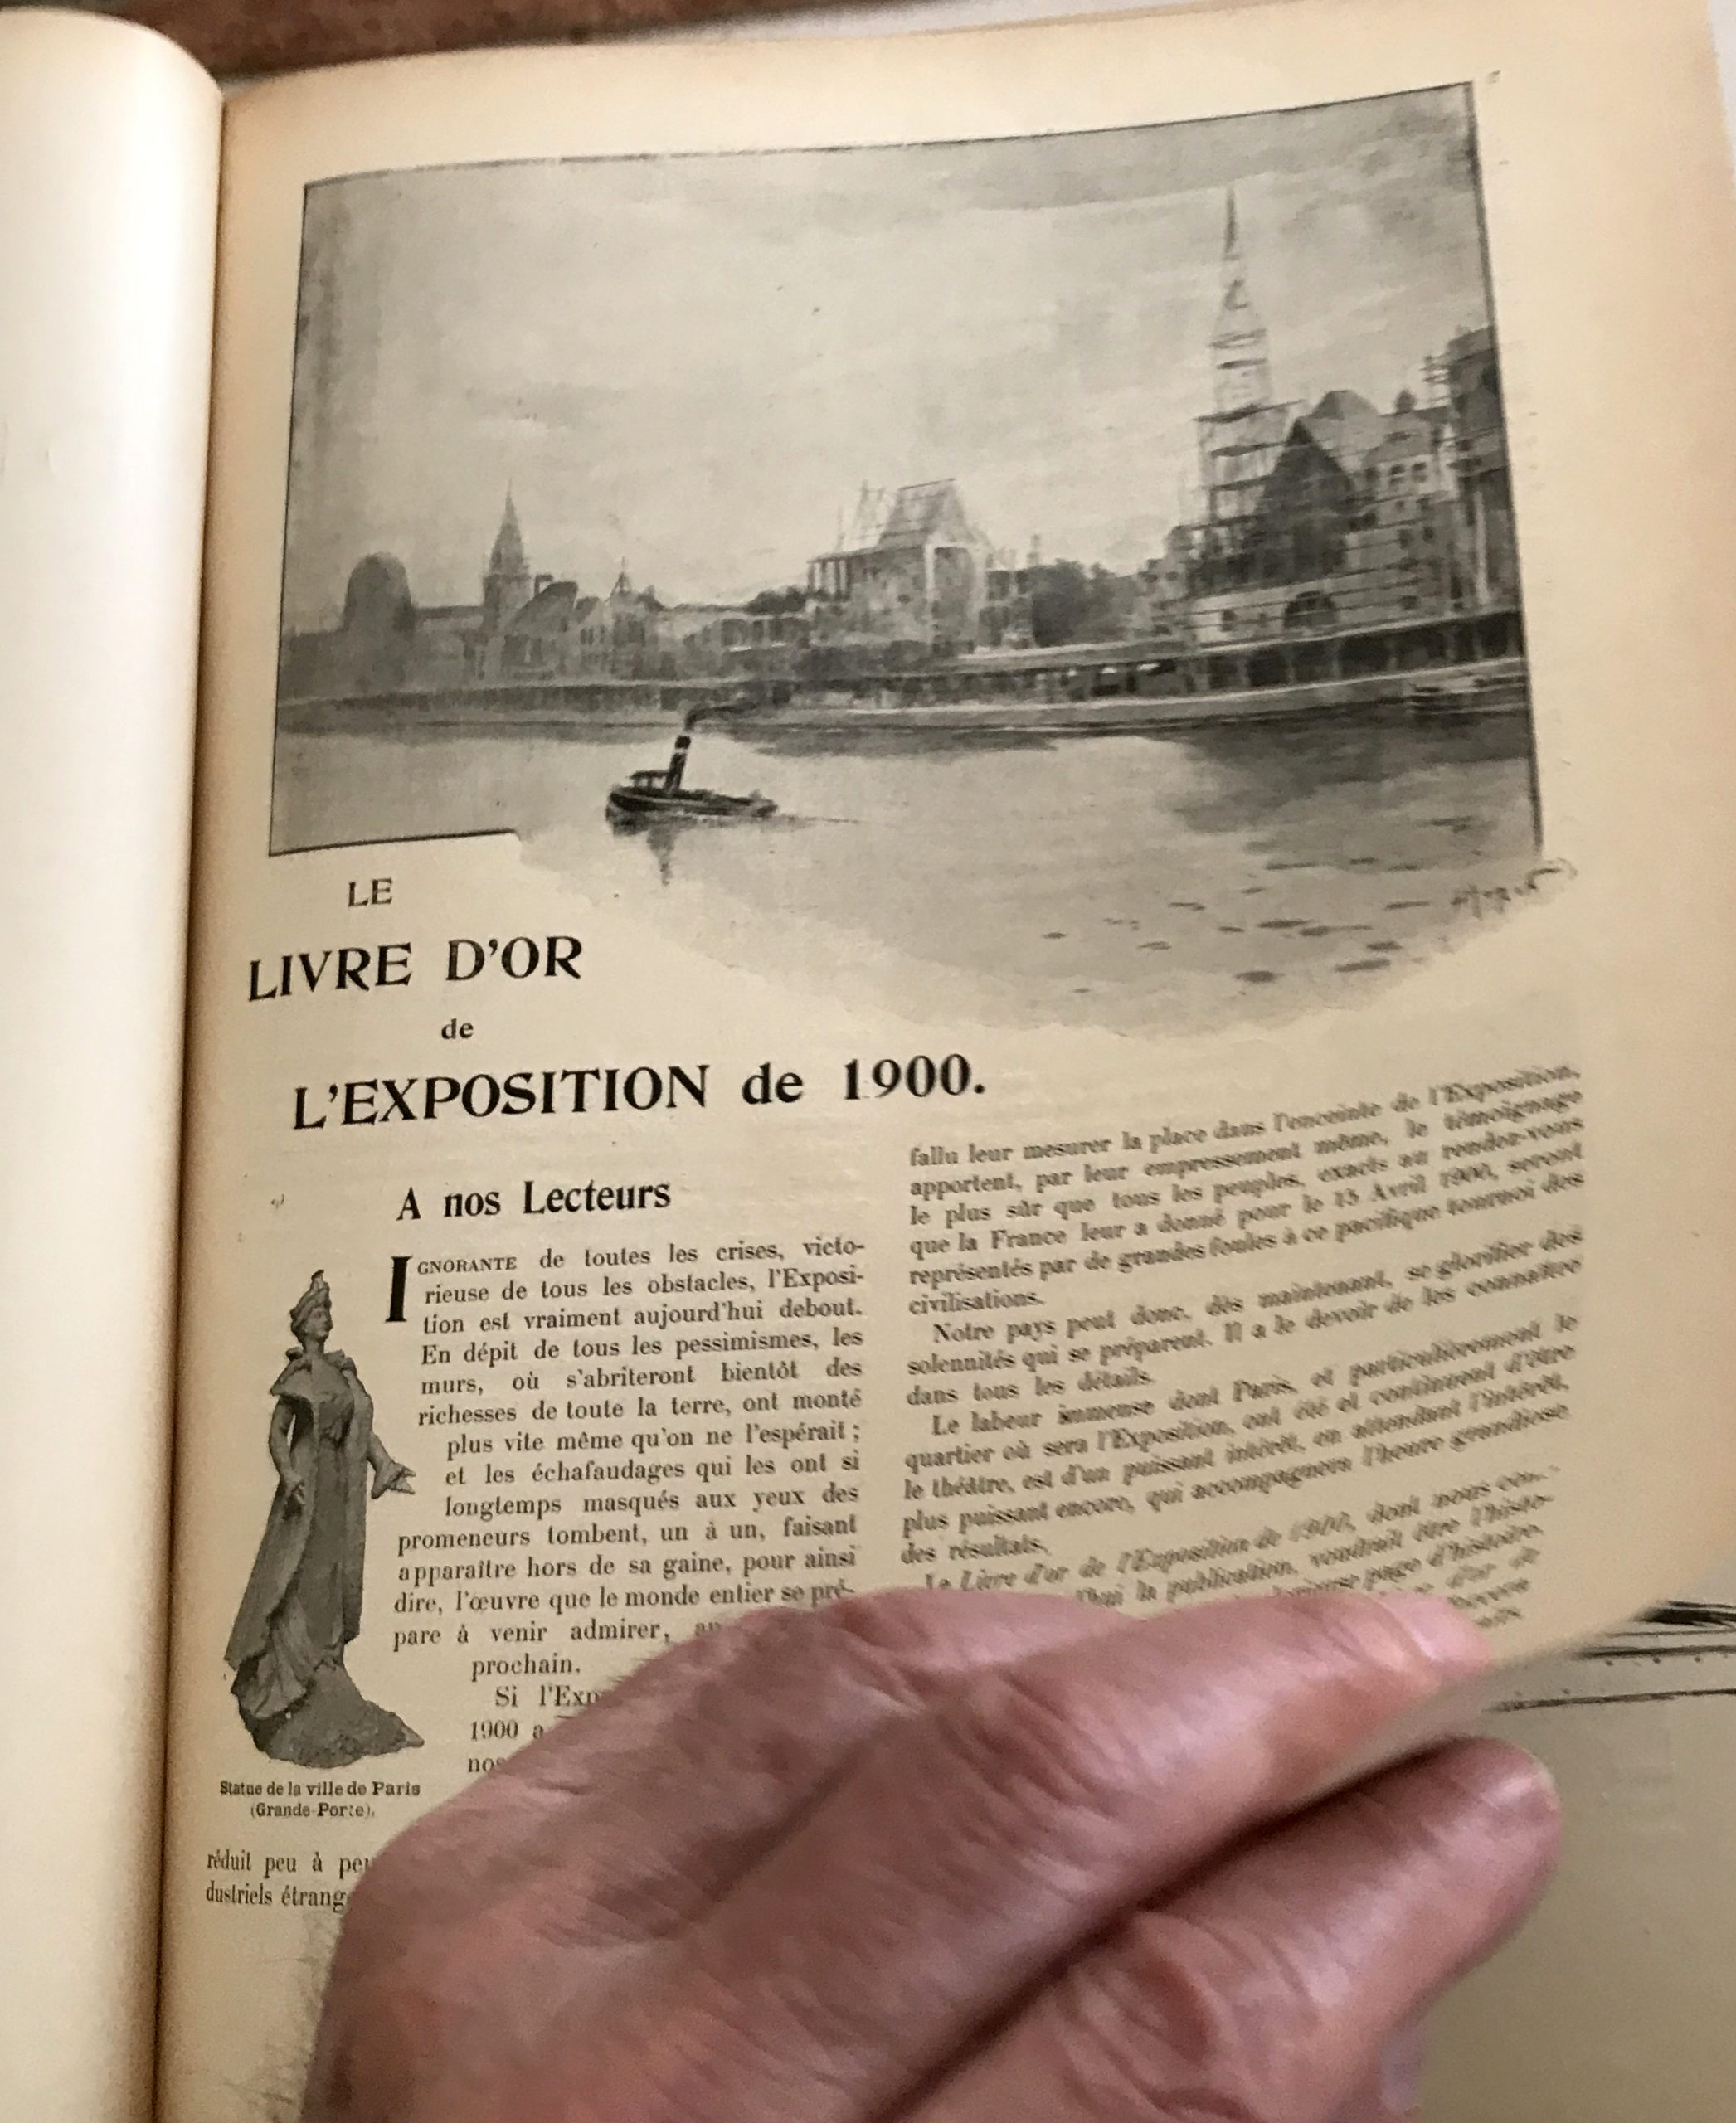 En feuilletant le Livre d’Or de l’Exposition de 1900